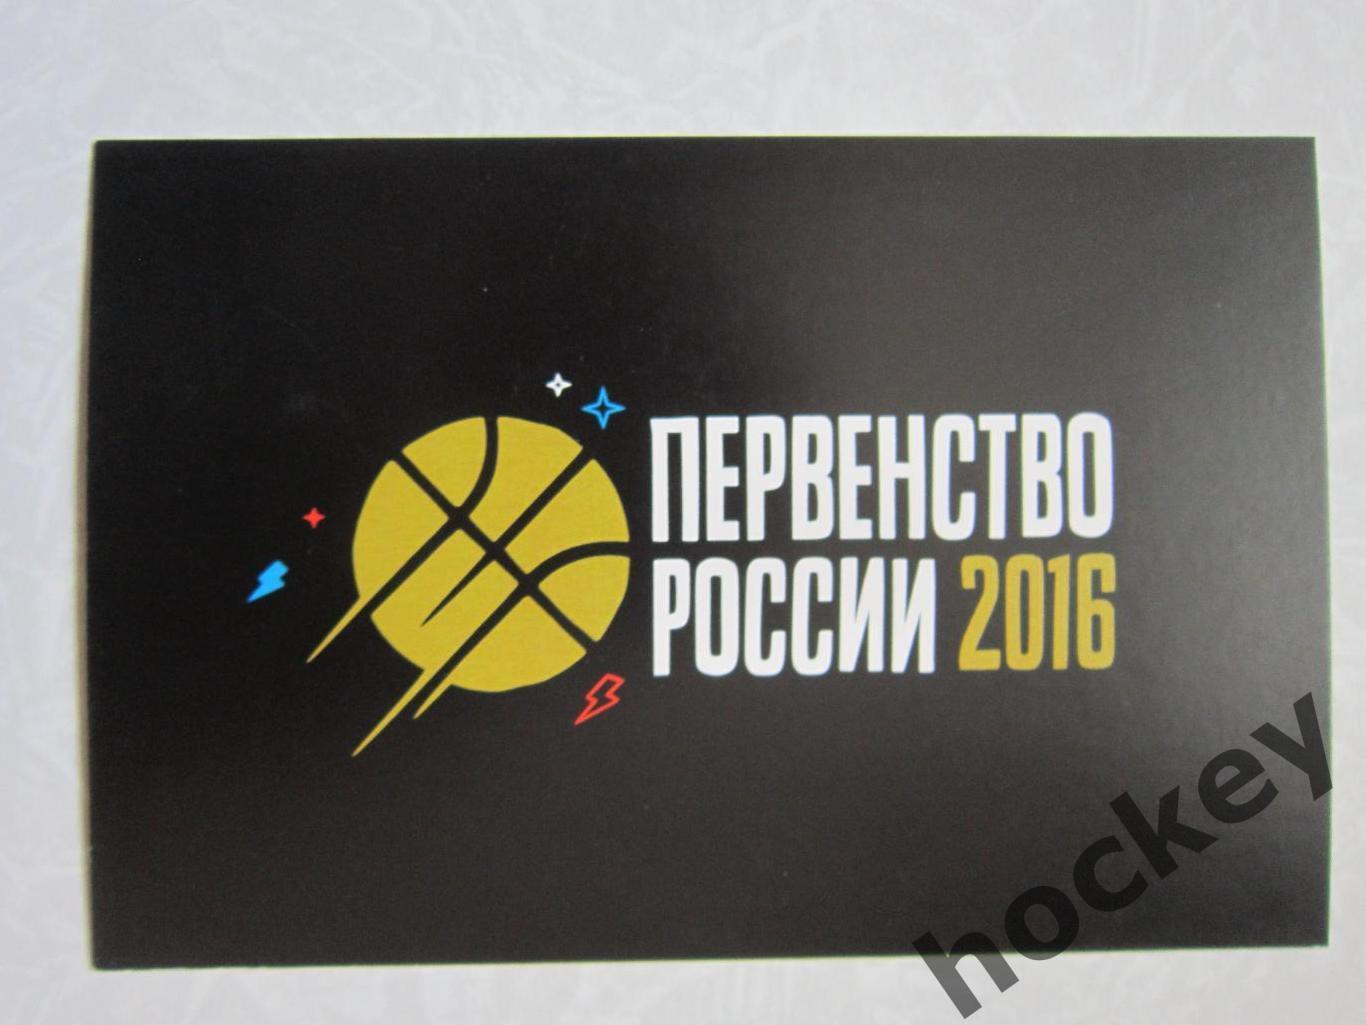 Всероссийский фестиваль баскетбола. Москва, Лужники, 2016 г. Открытка, 2 стороны